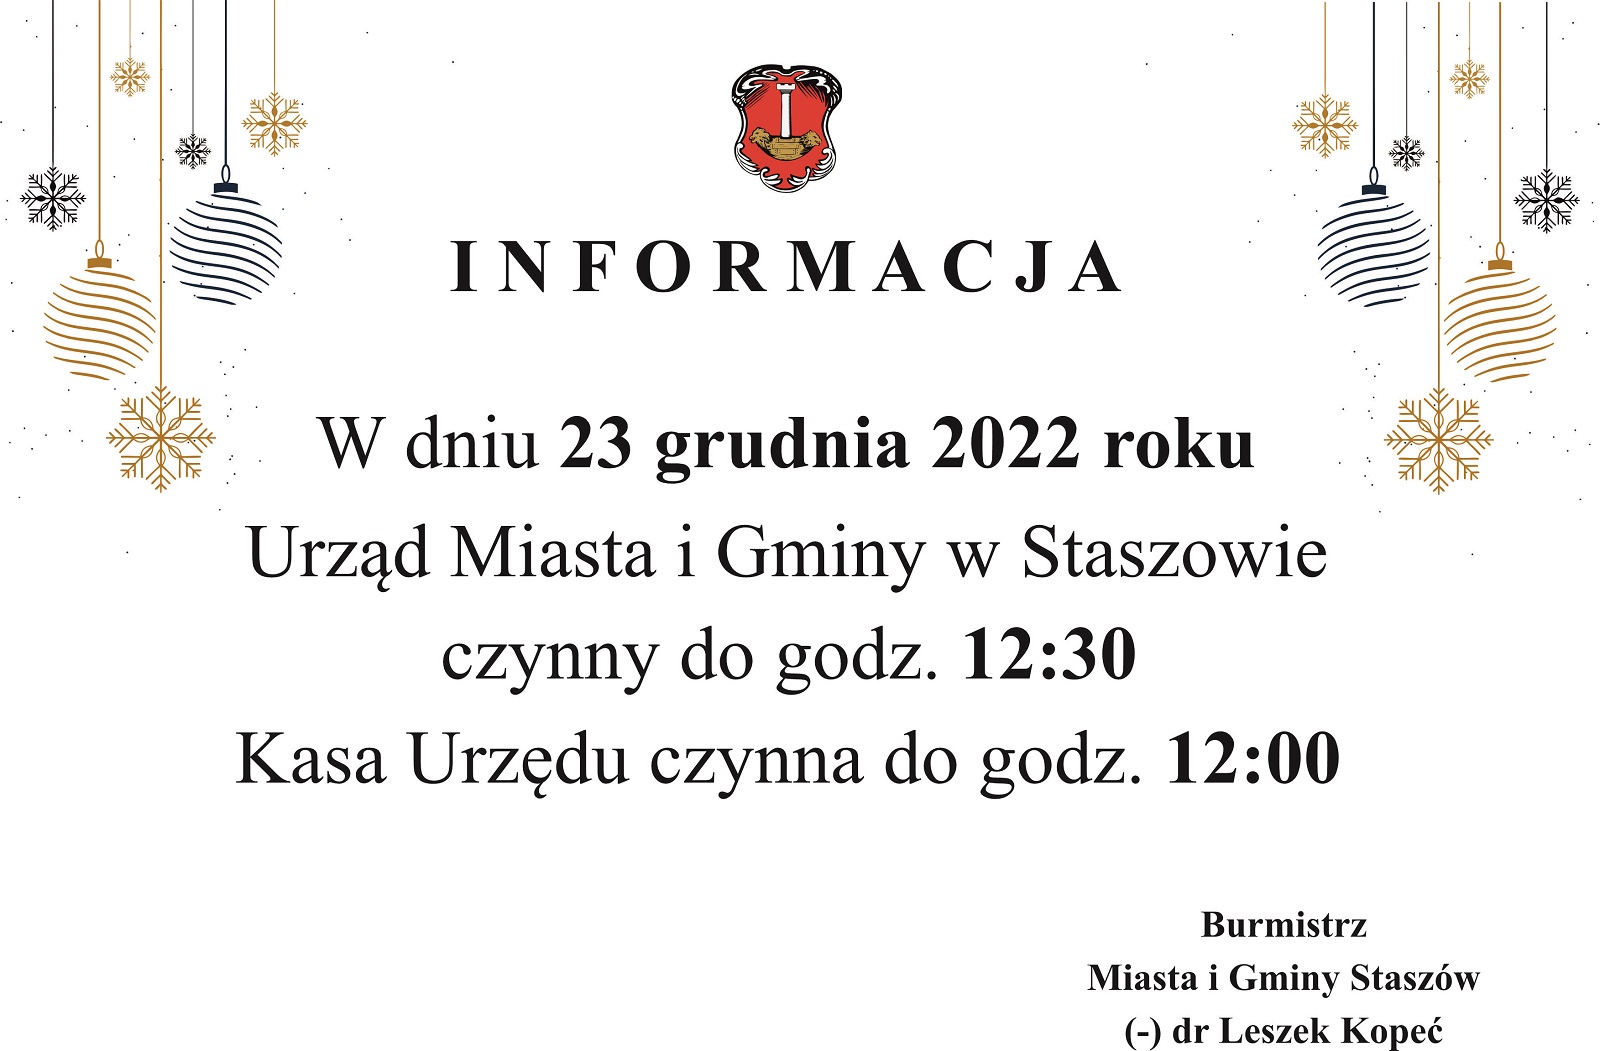 W dniu 23 grudnia 2022 roku Urząd Miasta i Gminy w Staszowie czynny do godz. 1230. Kasa Urzędu czynna do godz. 1200.